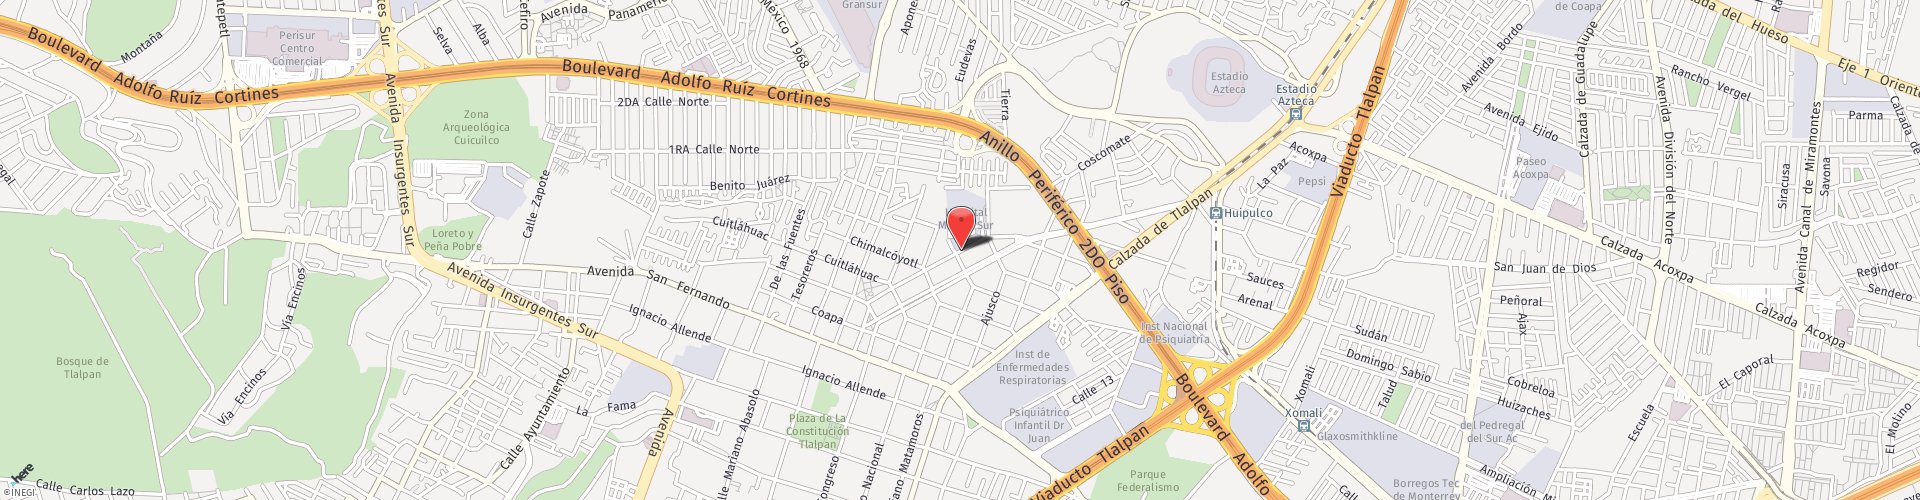 Location Map: Puente de Piedra #150 Torre B Mexico City, DF 14050